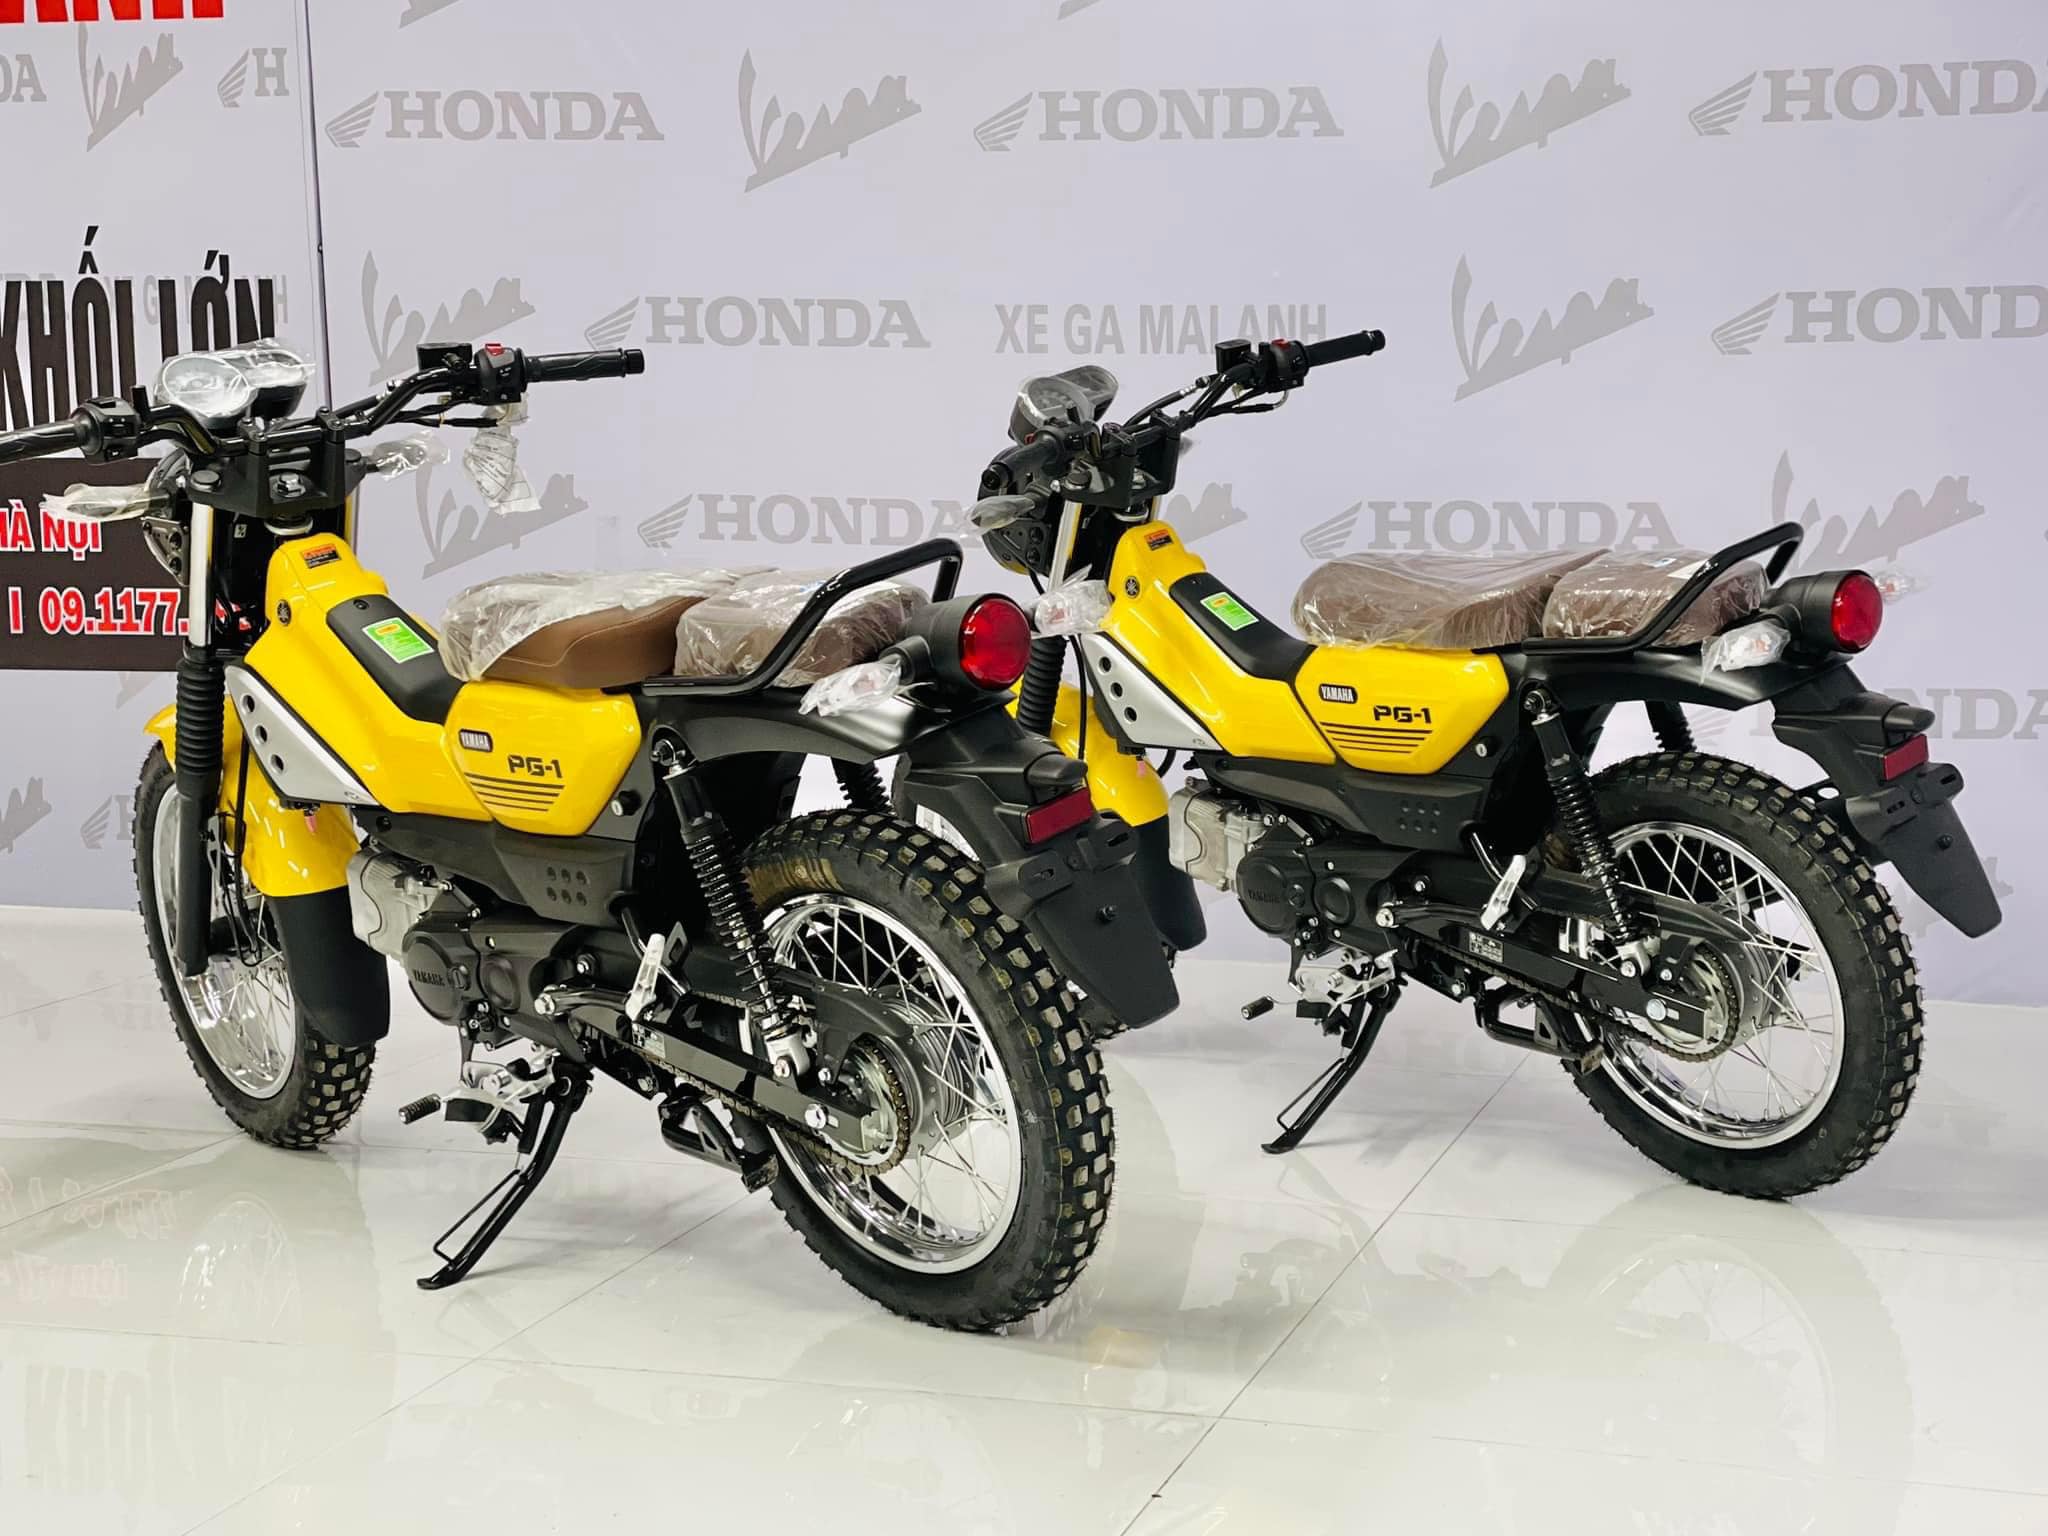 ヤマハ「FZ-X」 クロスオーバーバイクの最新モデルをインドで発表 | みんなのヤマハ